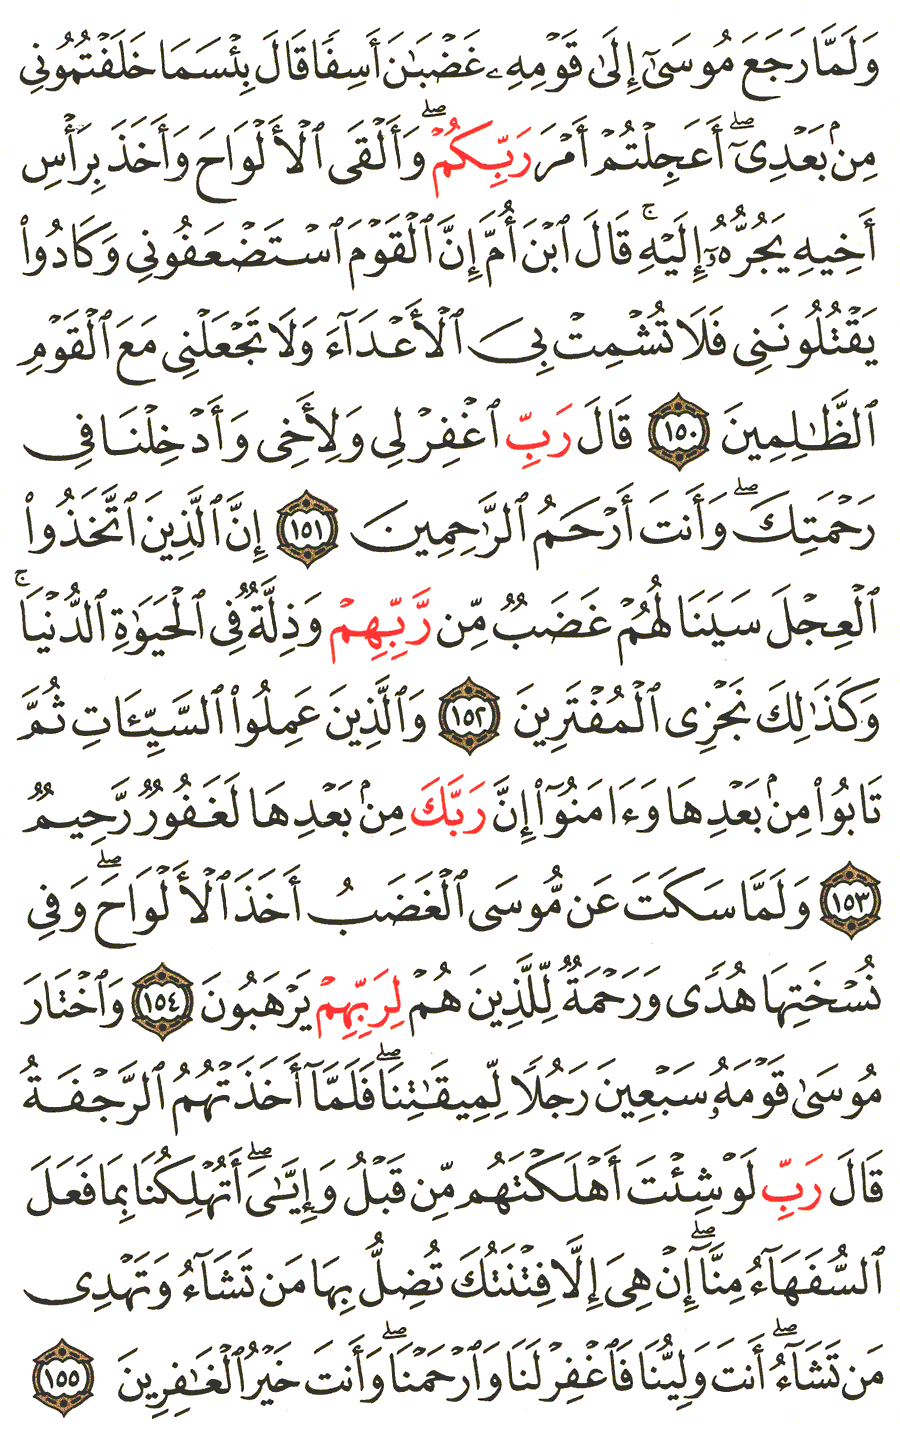 الصفحة 169 من القرآن الكريم